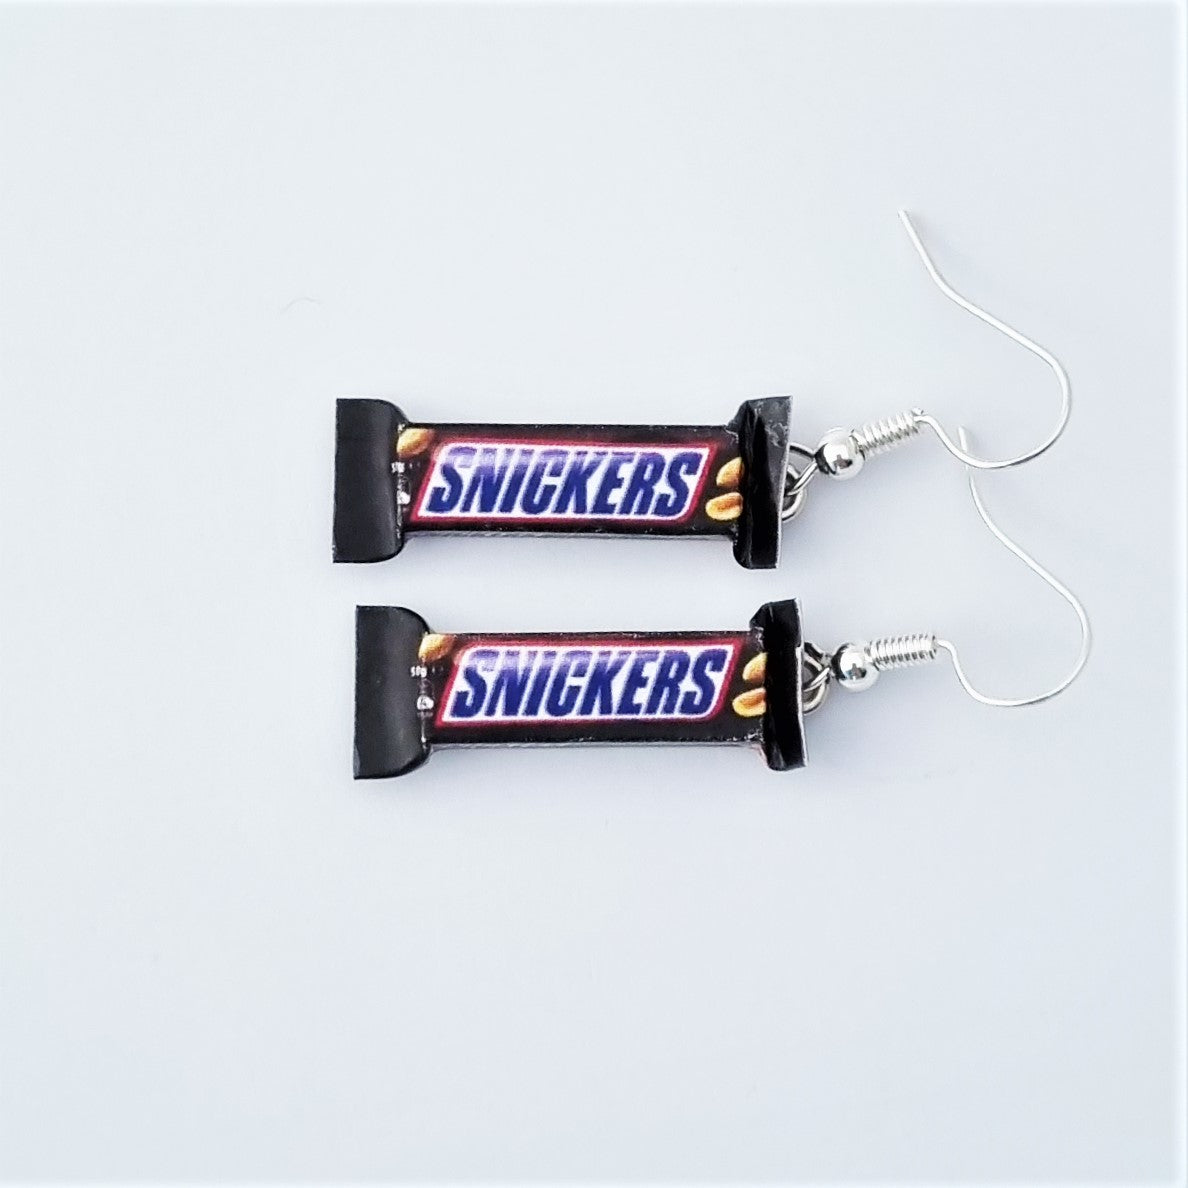 Snickers earrings